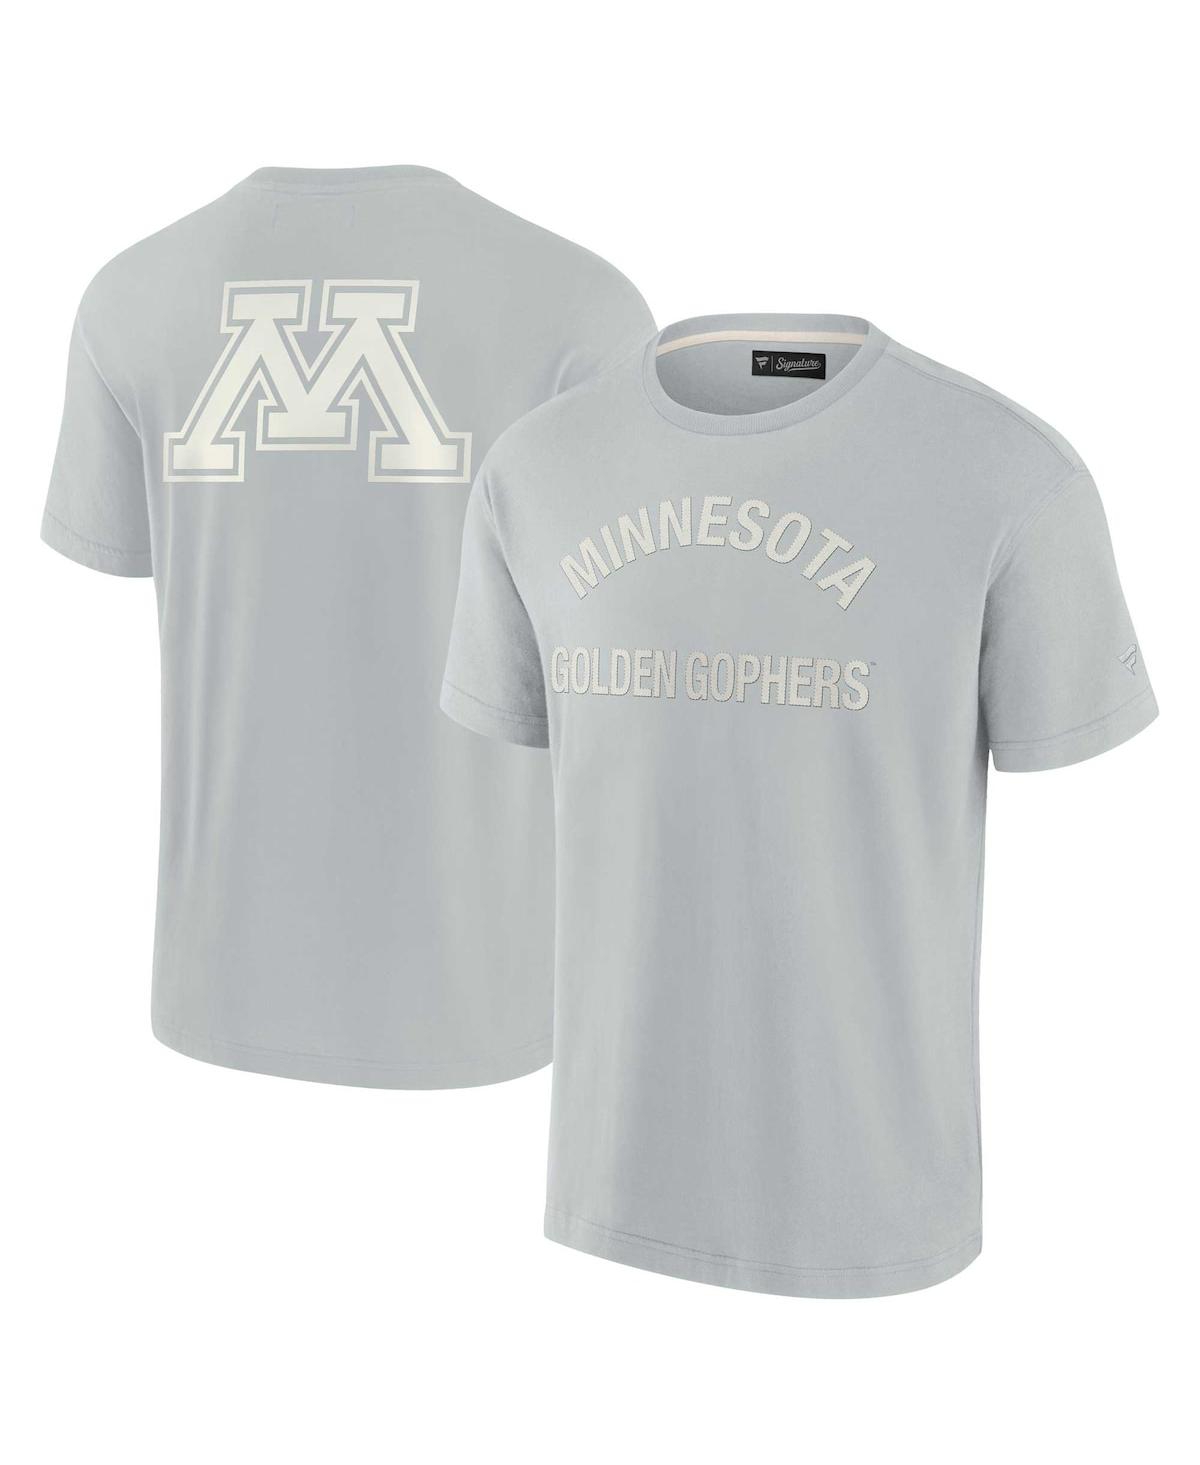 Men's and Women's Fanatics Signature Gray Minnesota Golden Gophers Super Soft Short Sleeve T-shirt - Gray